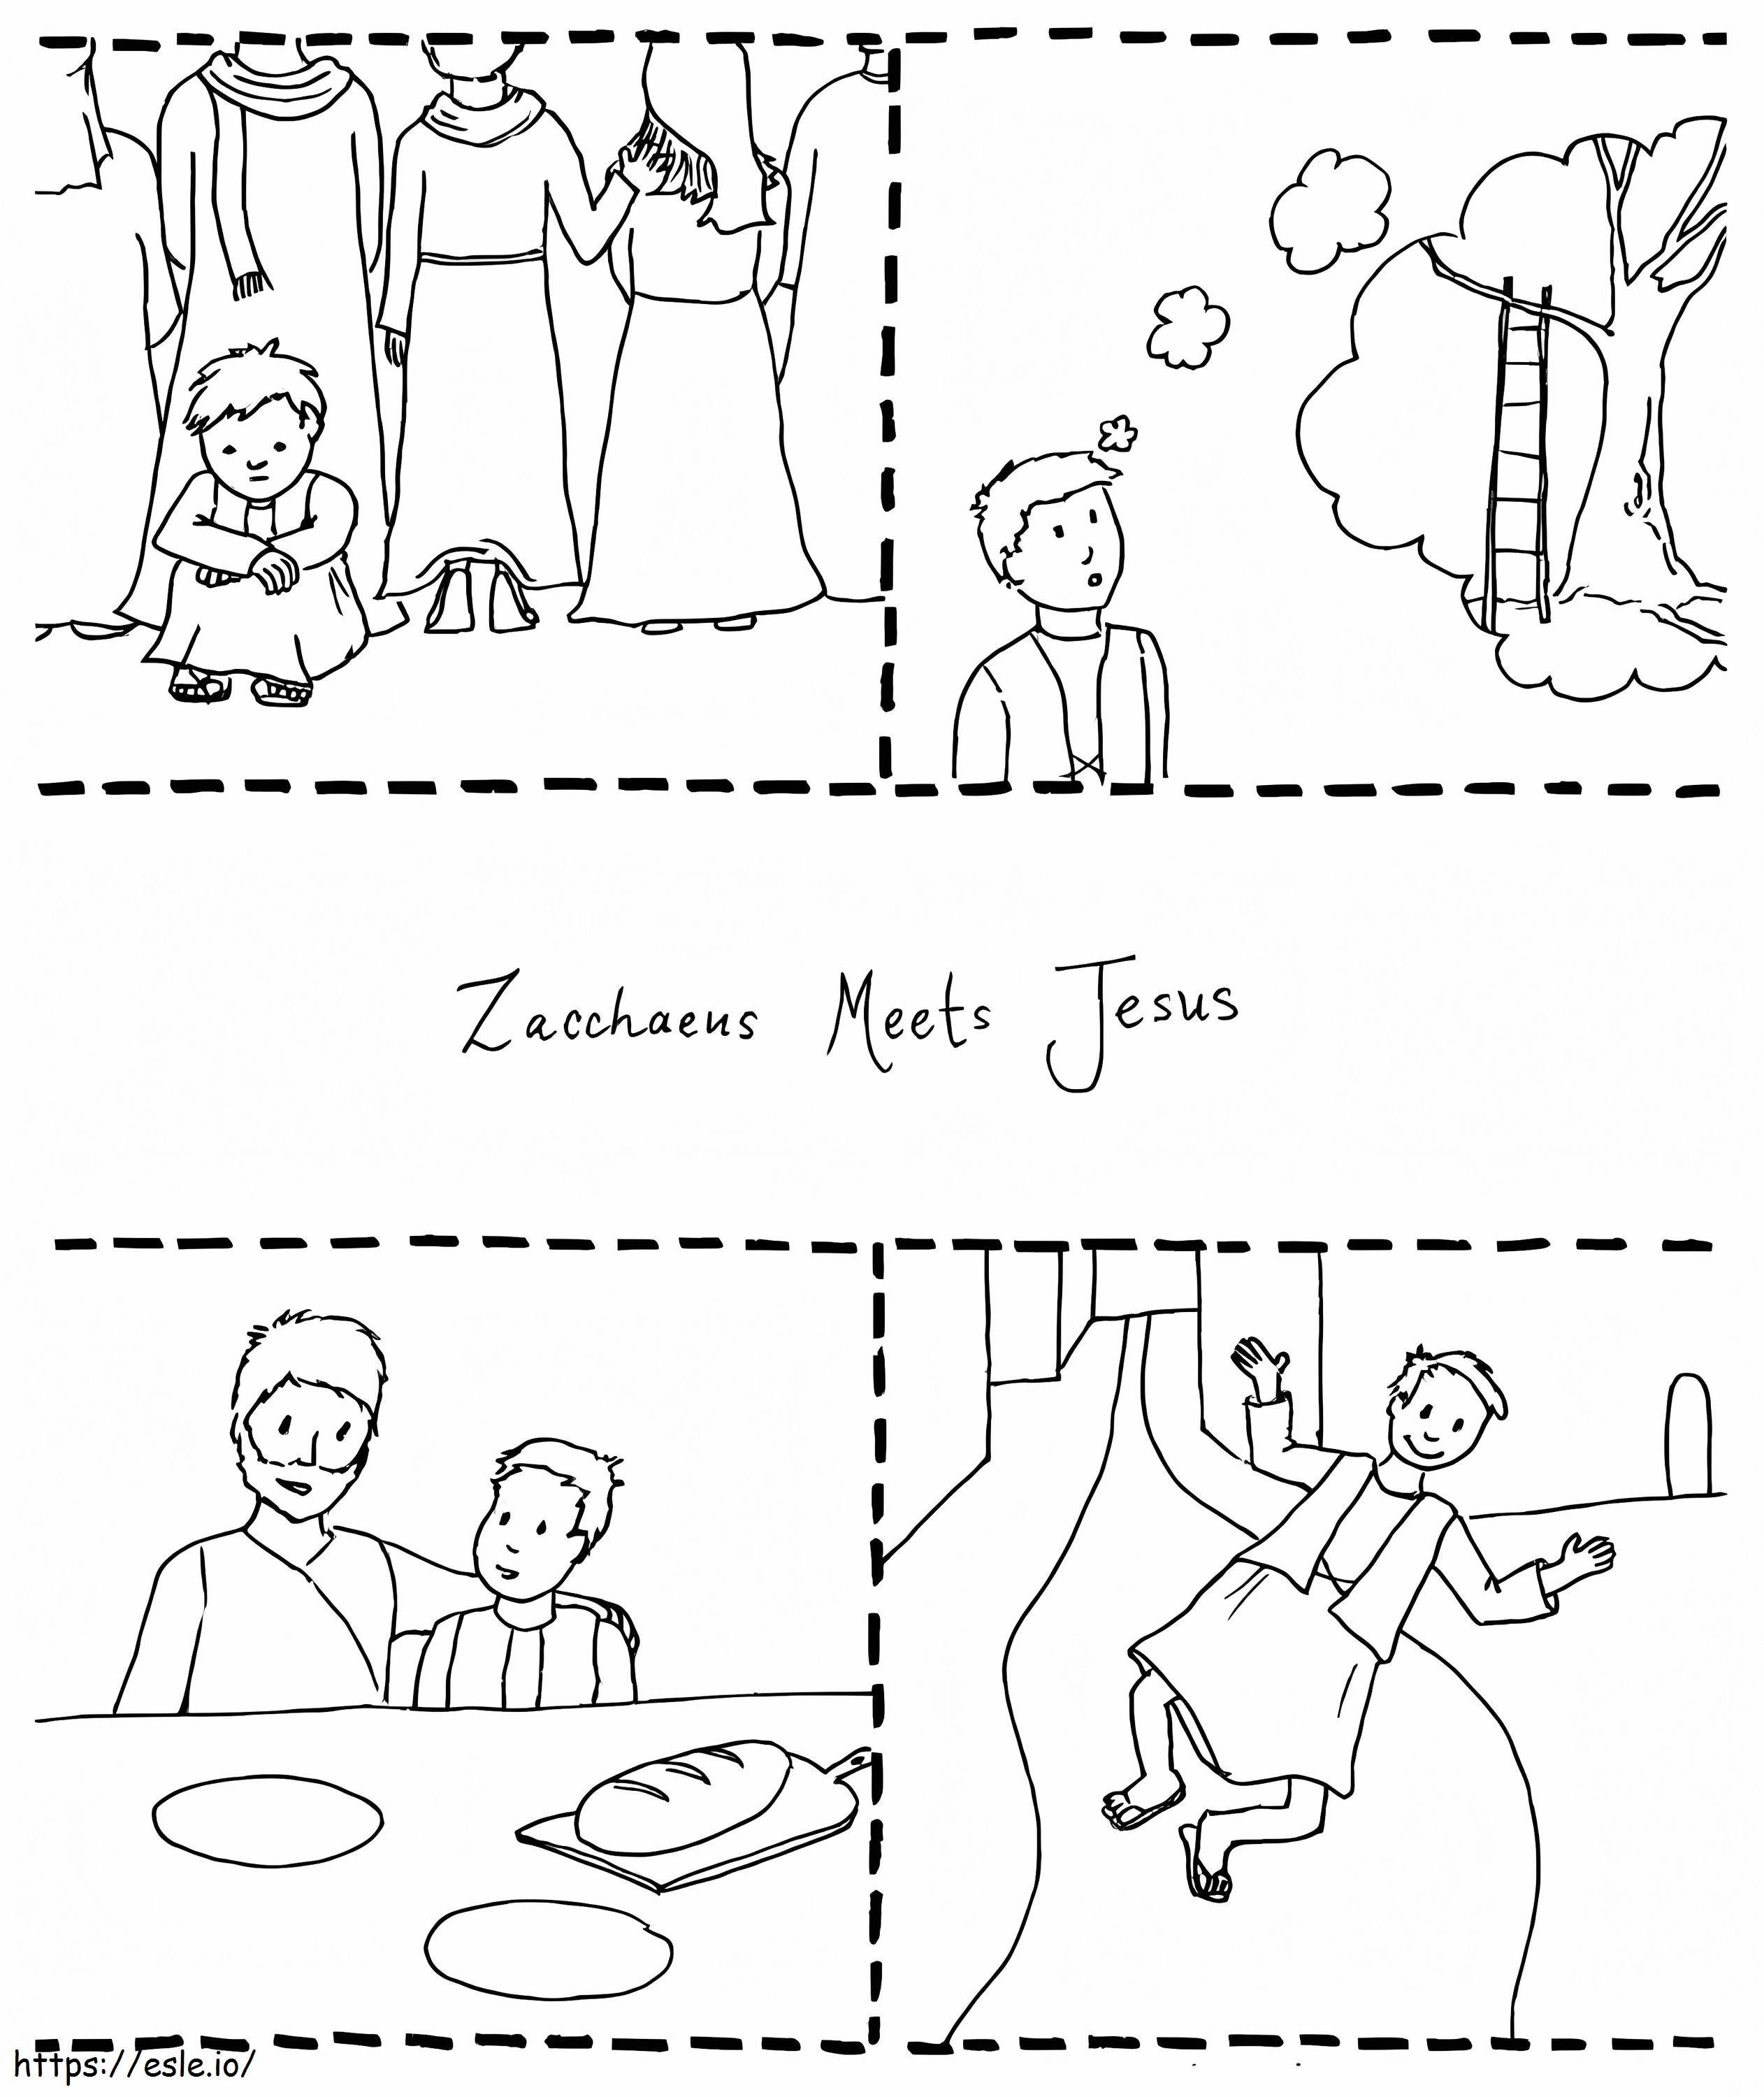 Jezus spotyka Zacheusza 1 kolorowanka